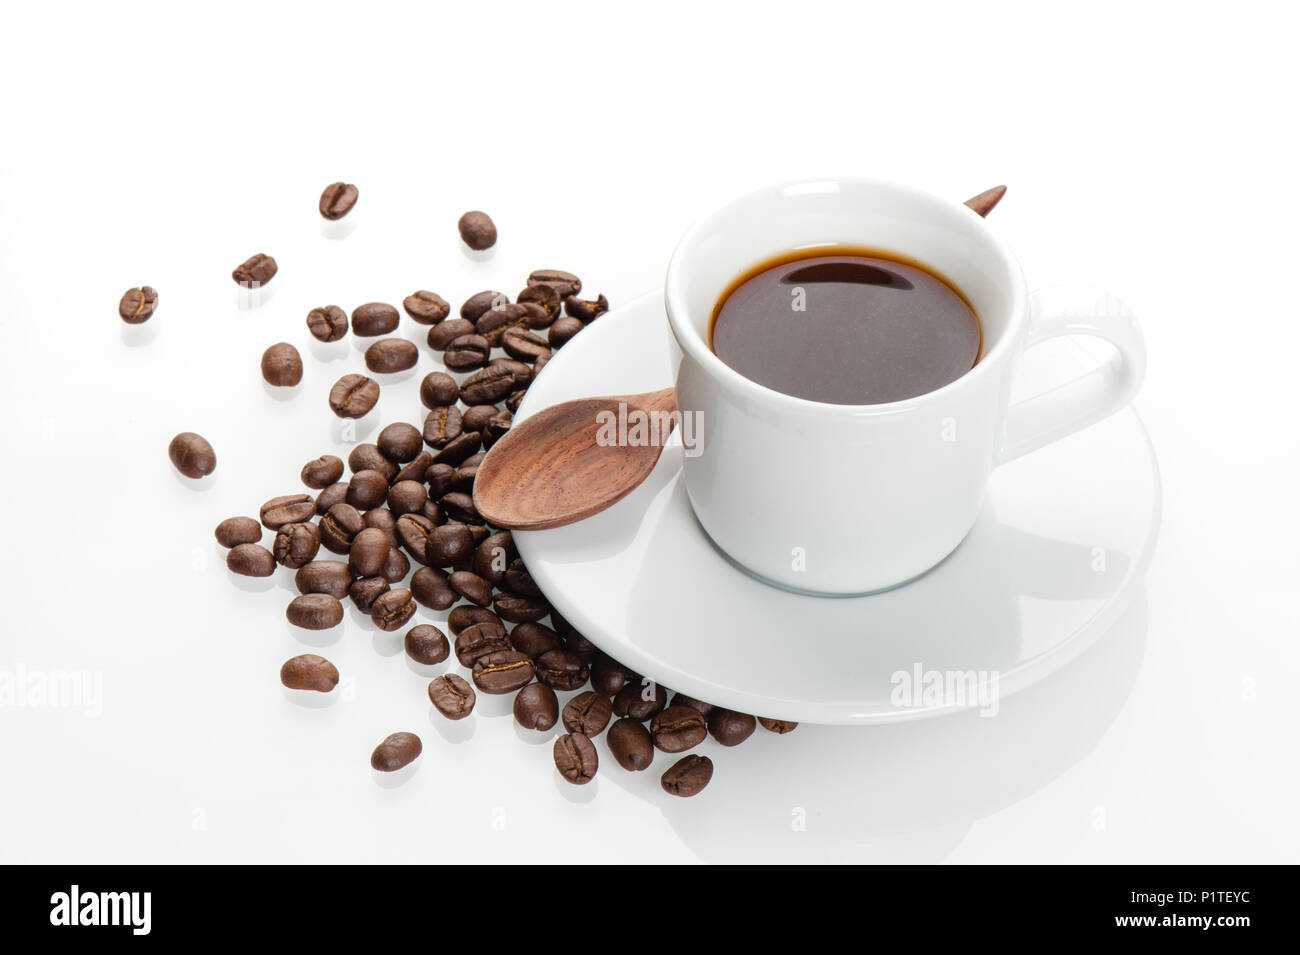 Gli amanti del caffe' concetto, una tazza di caffè espresso. Foto Stock